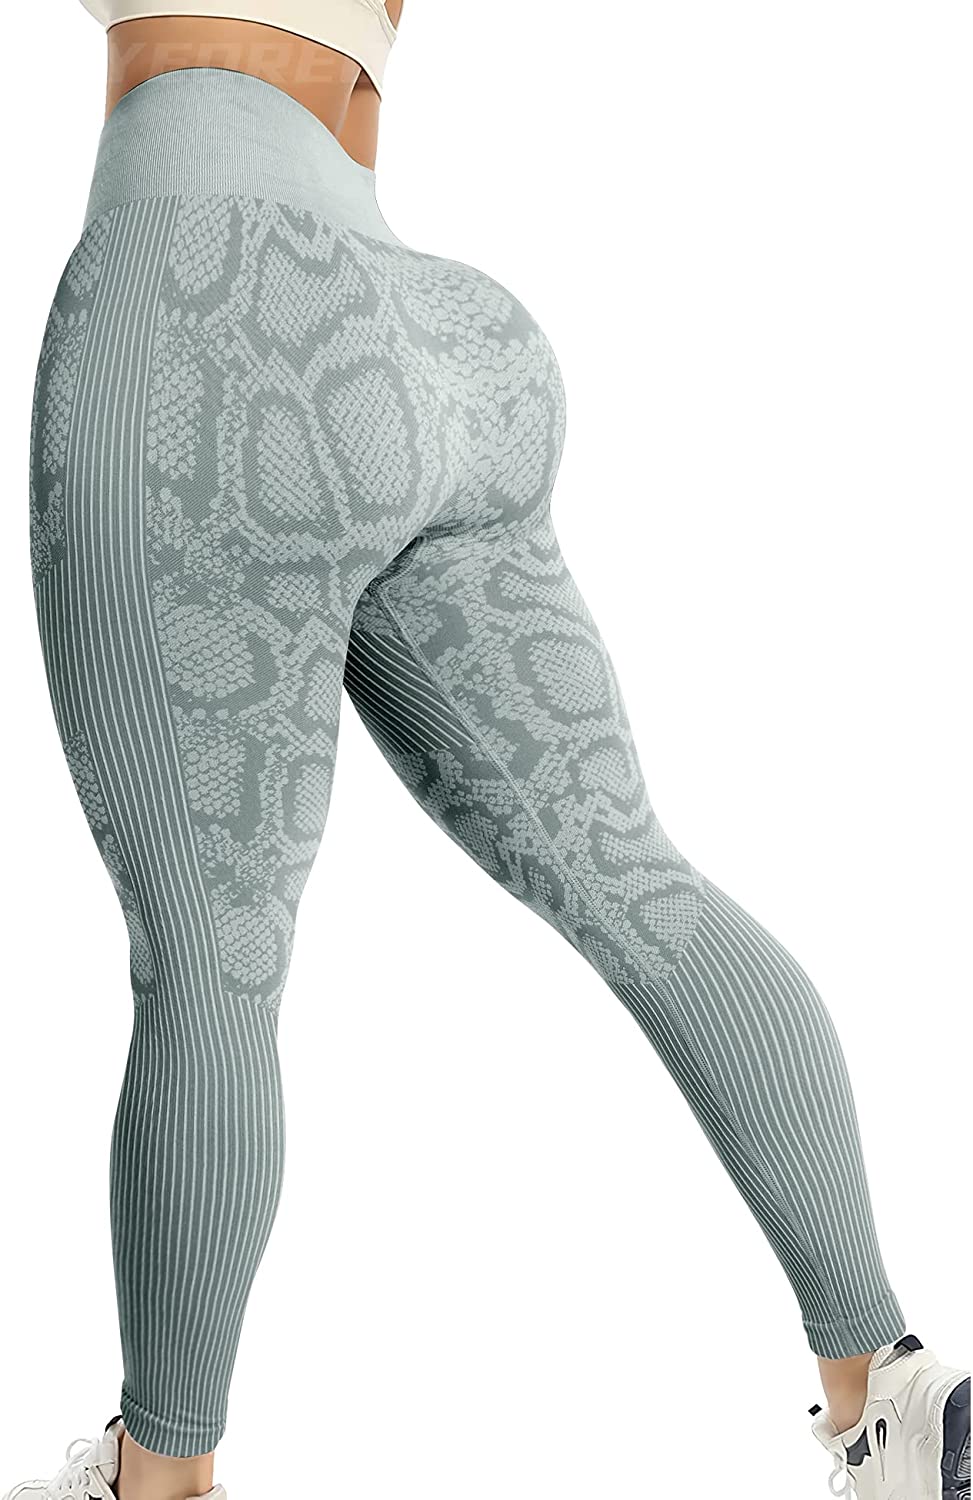 Jahrioiu 100% Cotton Yoga Pants Women Petite Top Leggings Yoga Athletic  Workout Pants Women Fitness Crop Sport Camouflage Pants : :  Clothing, Shoes & Accessories